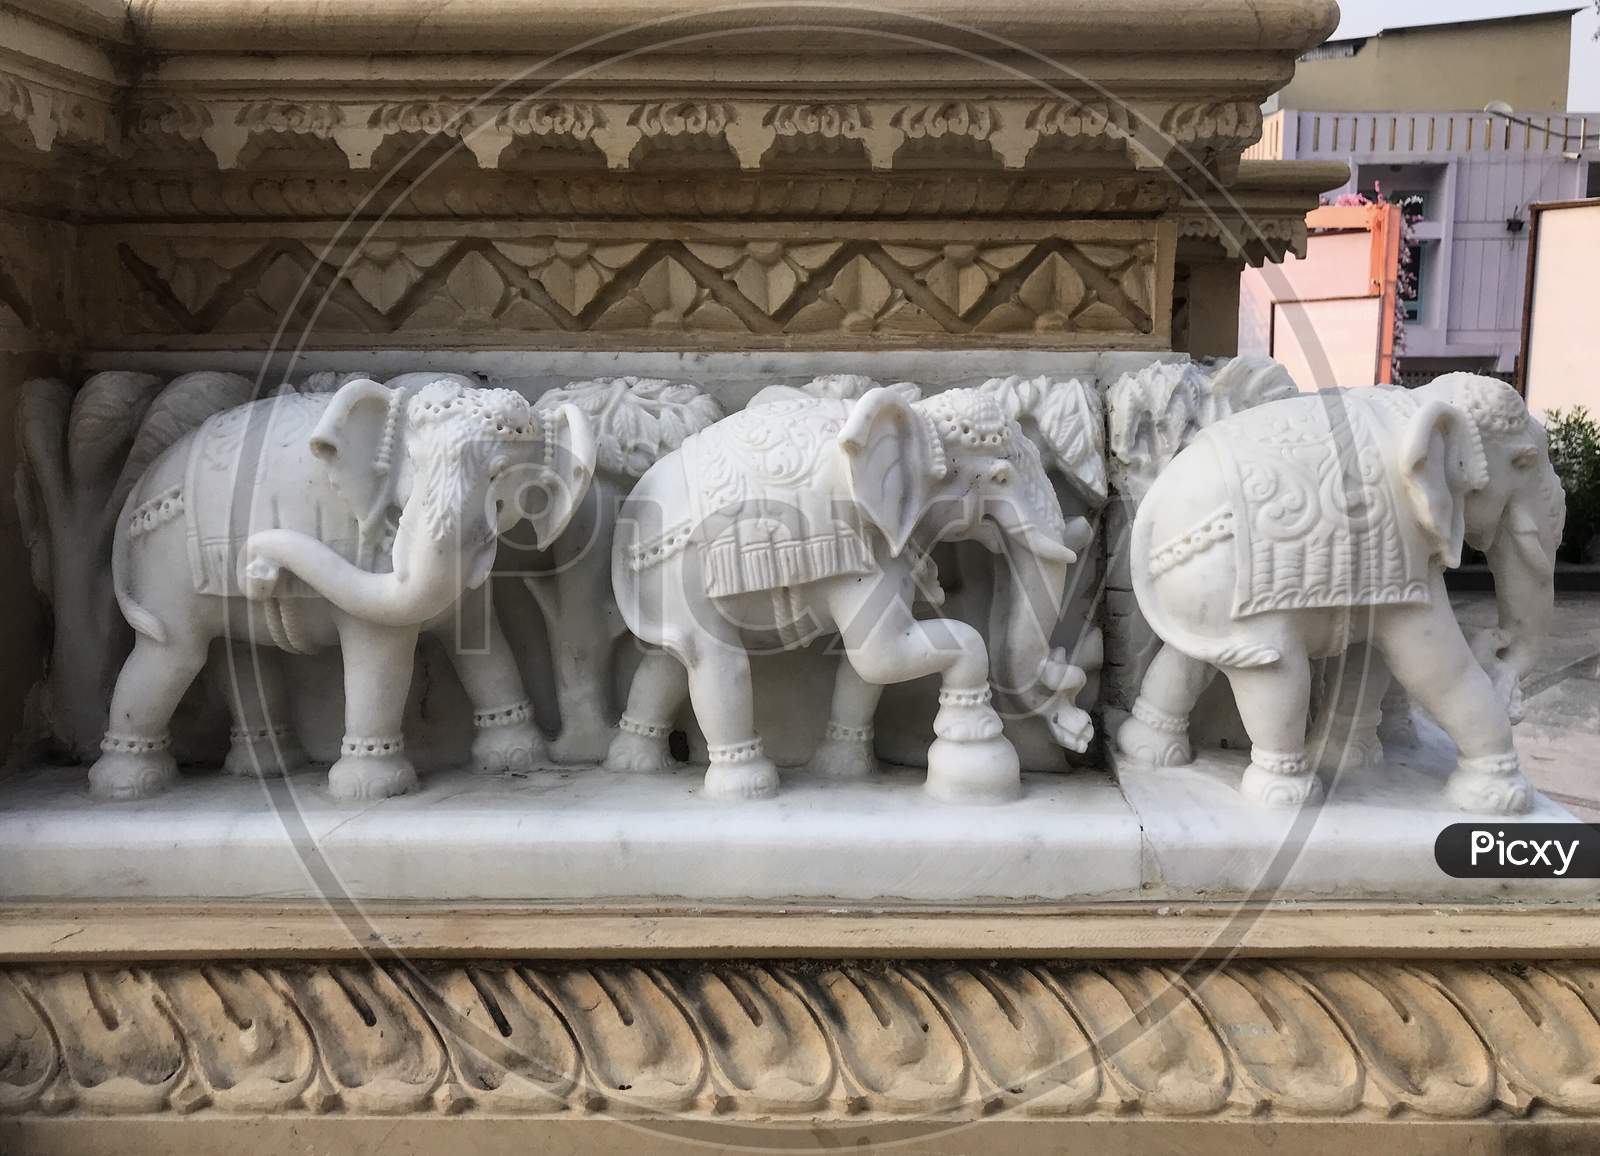 Jabalpur, Madhya Pradesh/India : November 23, 2019 - Small Elephants at Pisanhari Ki Madhiya, Jabalpur